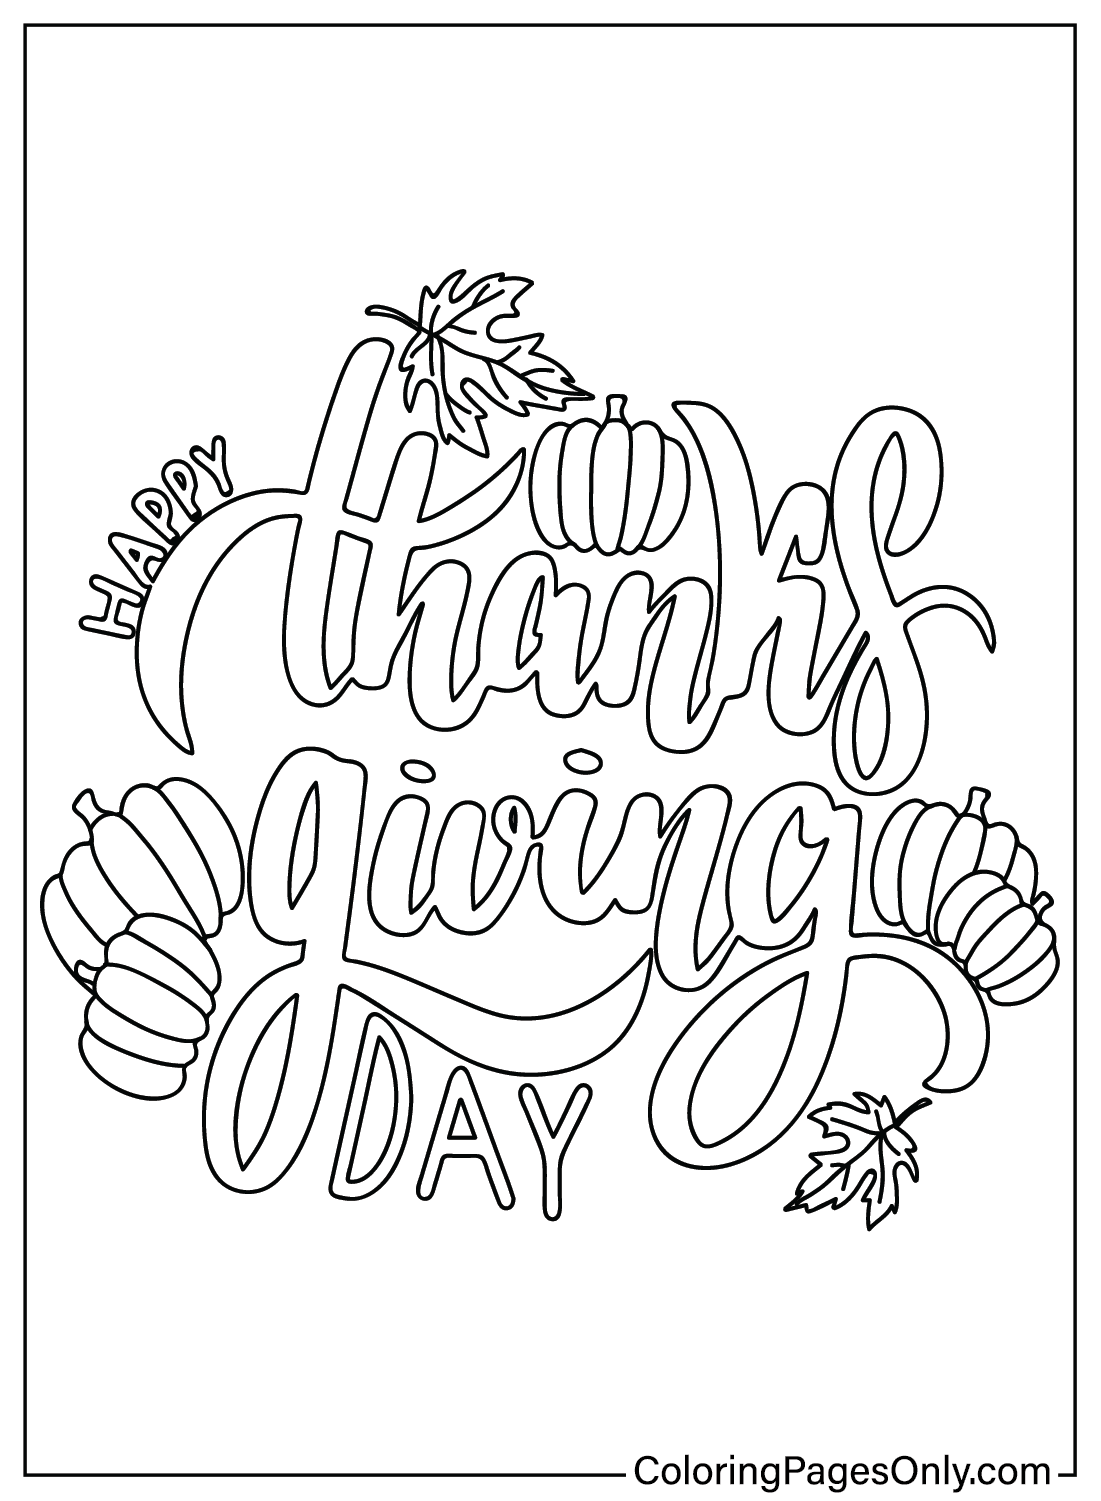 Pagina da colorare del Ringraziamento gratuita dal Ringraziamento